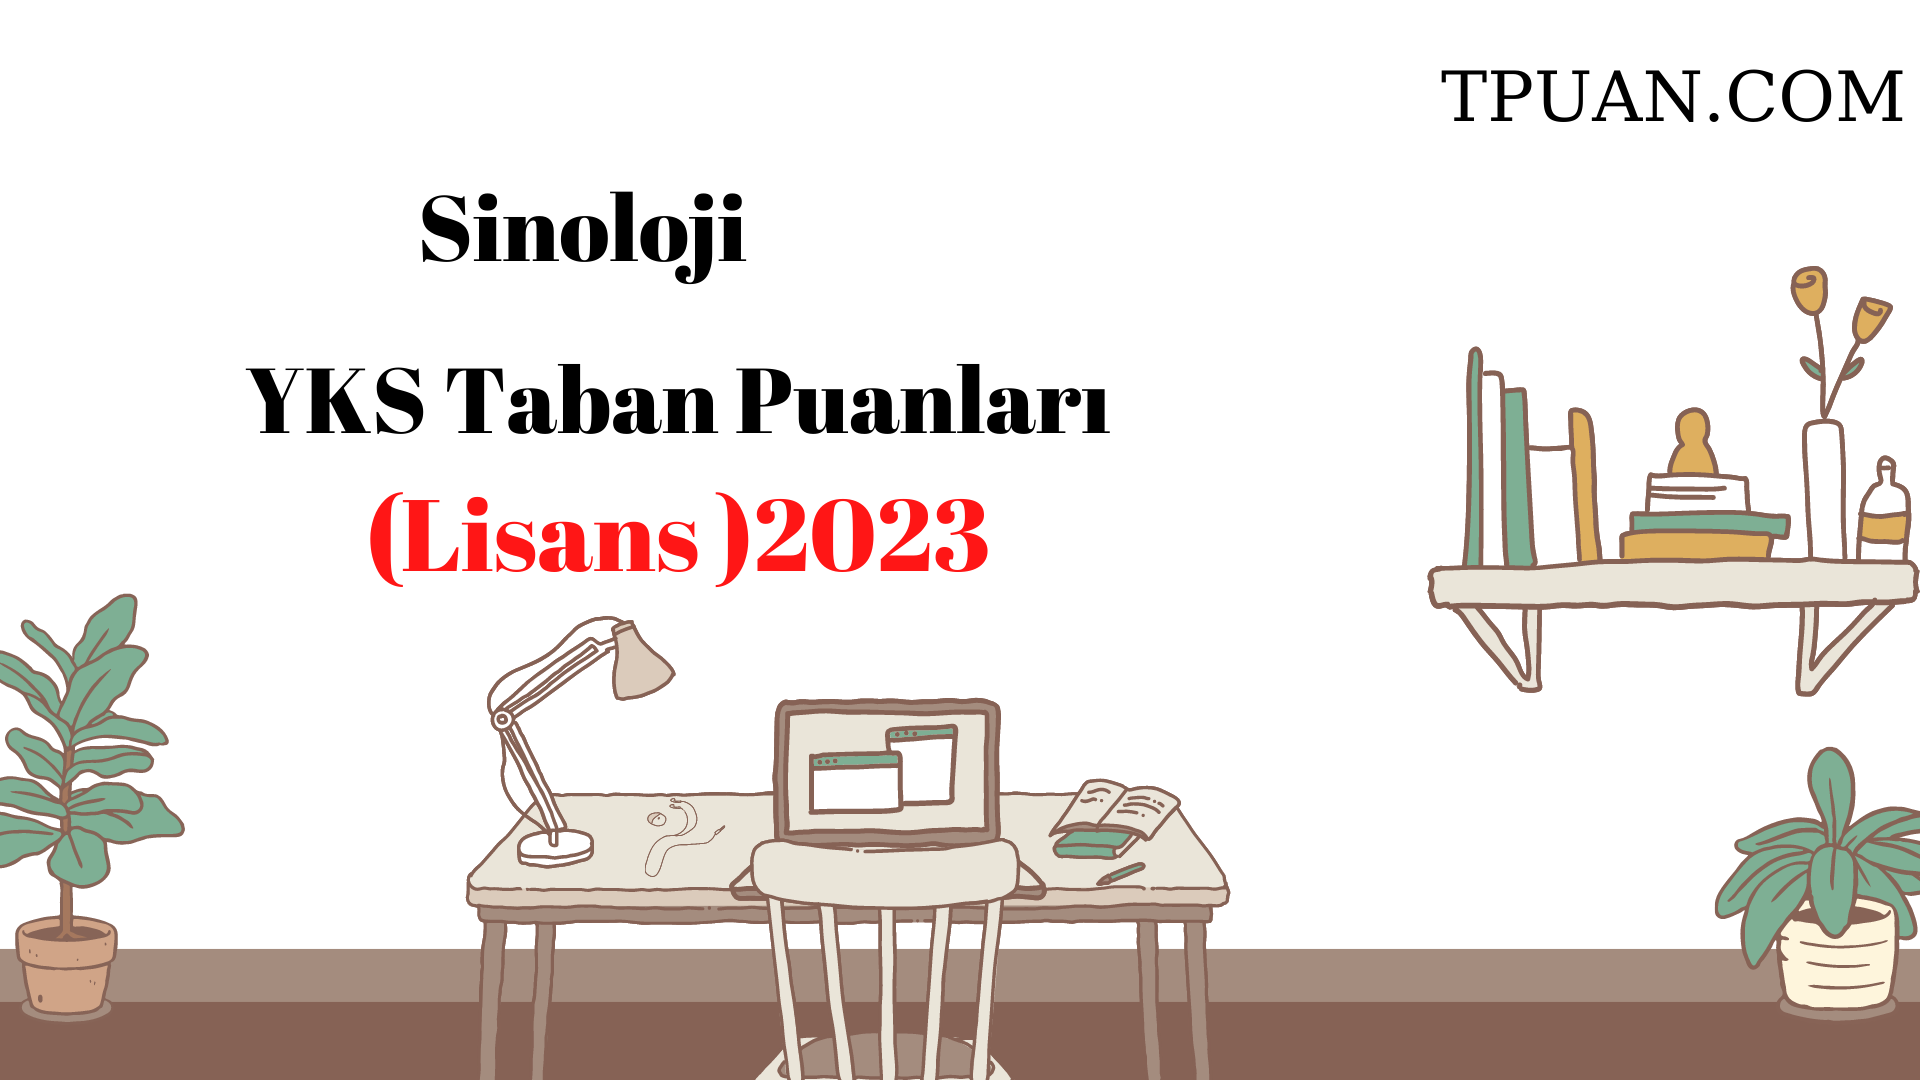  Sinoloji Bölümü YKS Taban Puanları (4 Yıllık) 2023